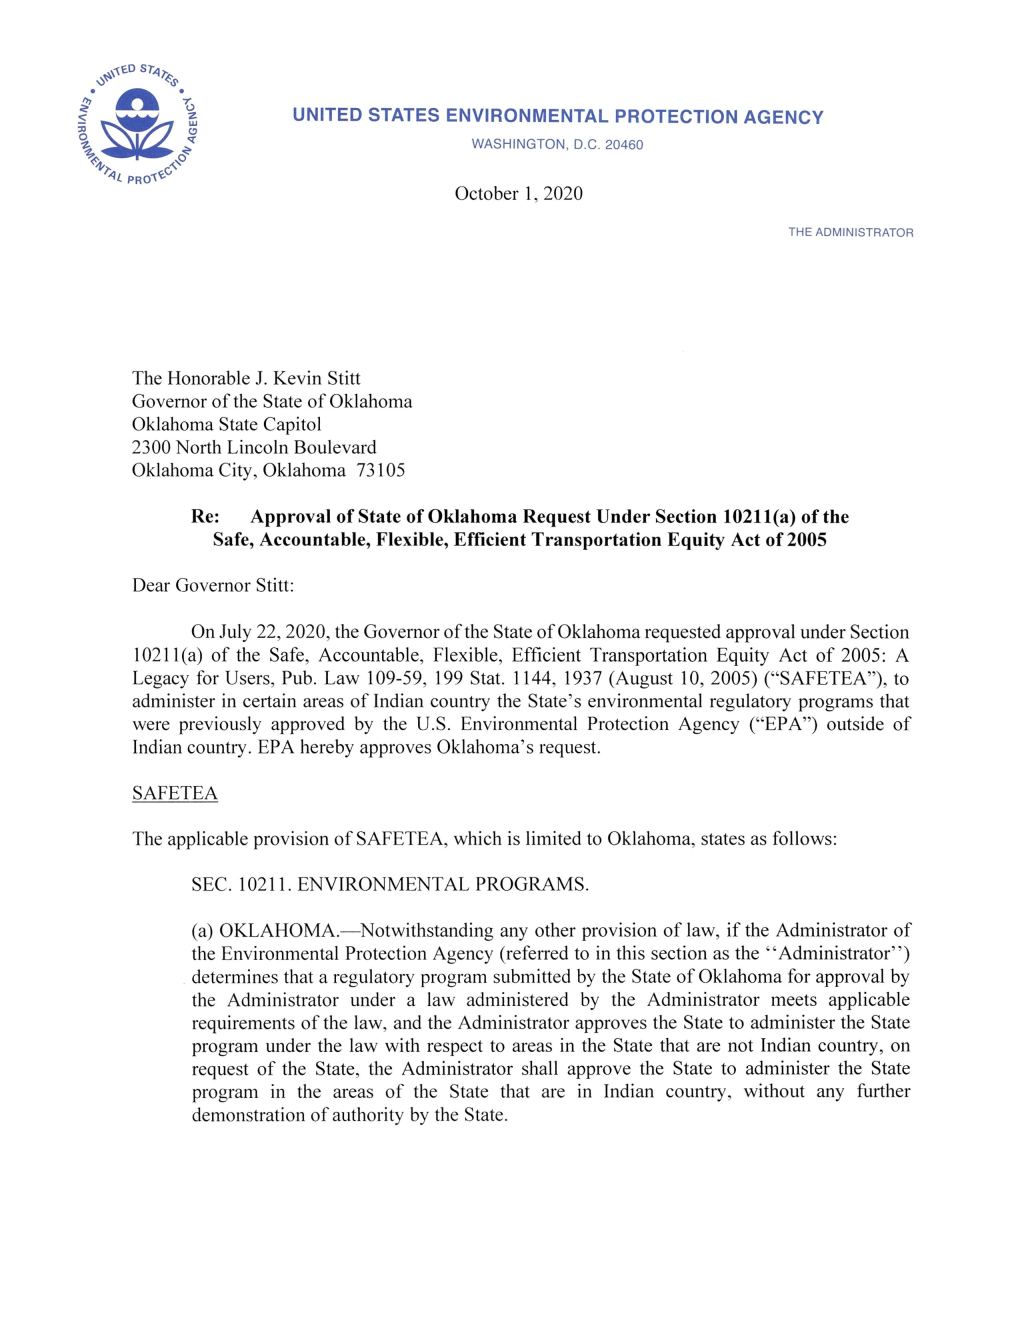 EPA Letter to Gov. Stitt